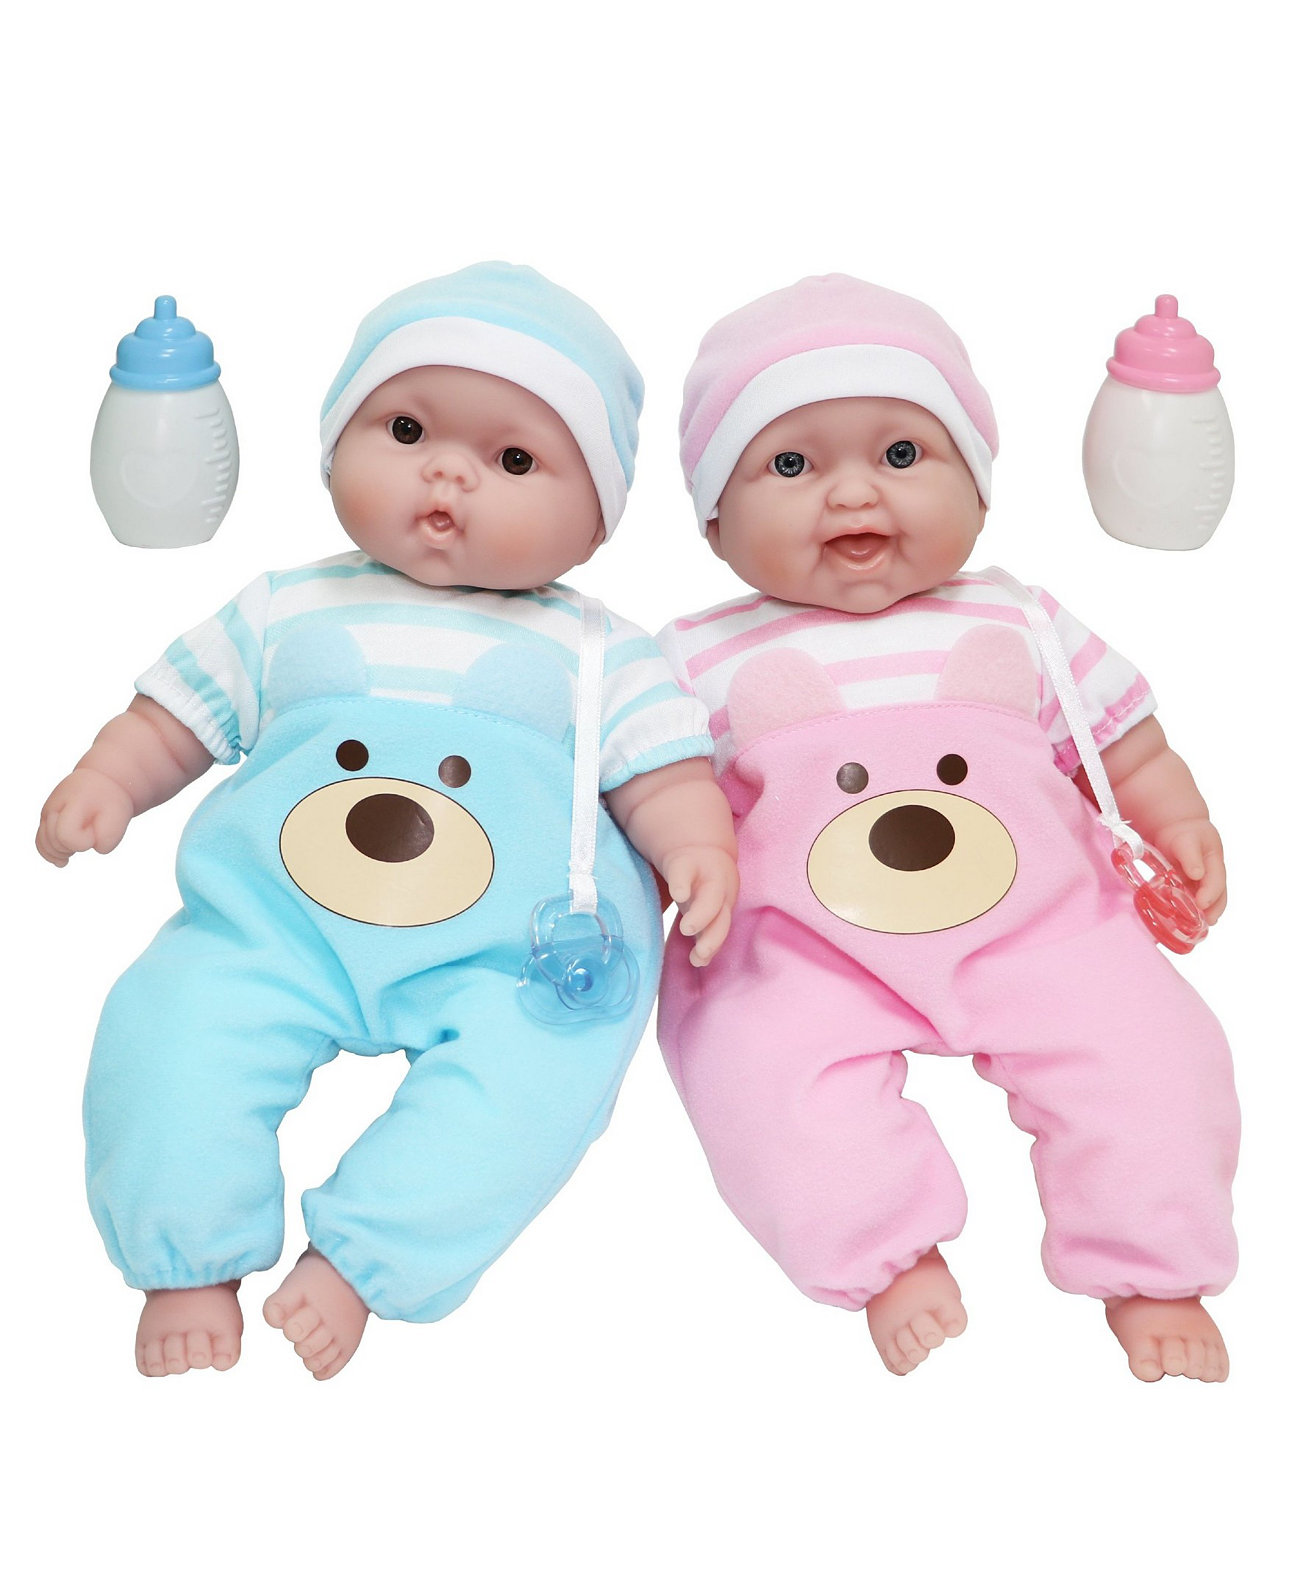 Lots to Cuddle Babies 13-дюймовые детские куклы Twins с мягким телом для детей от 2 лет и старше, дизайн - Беренгер JC Toys